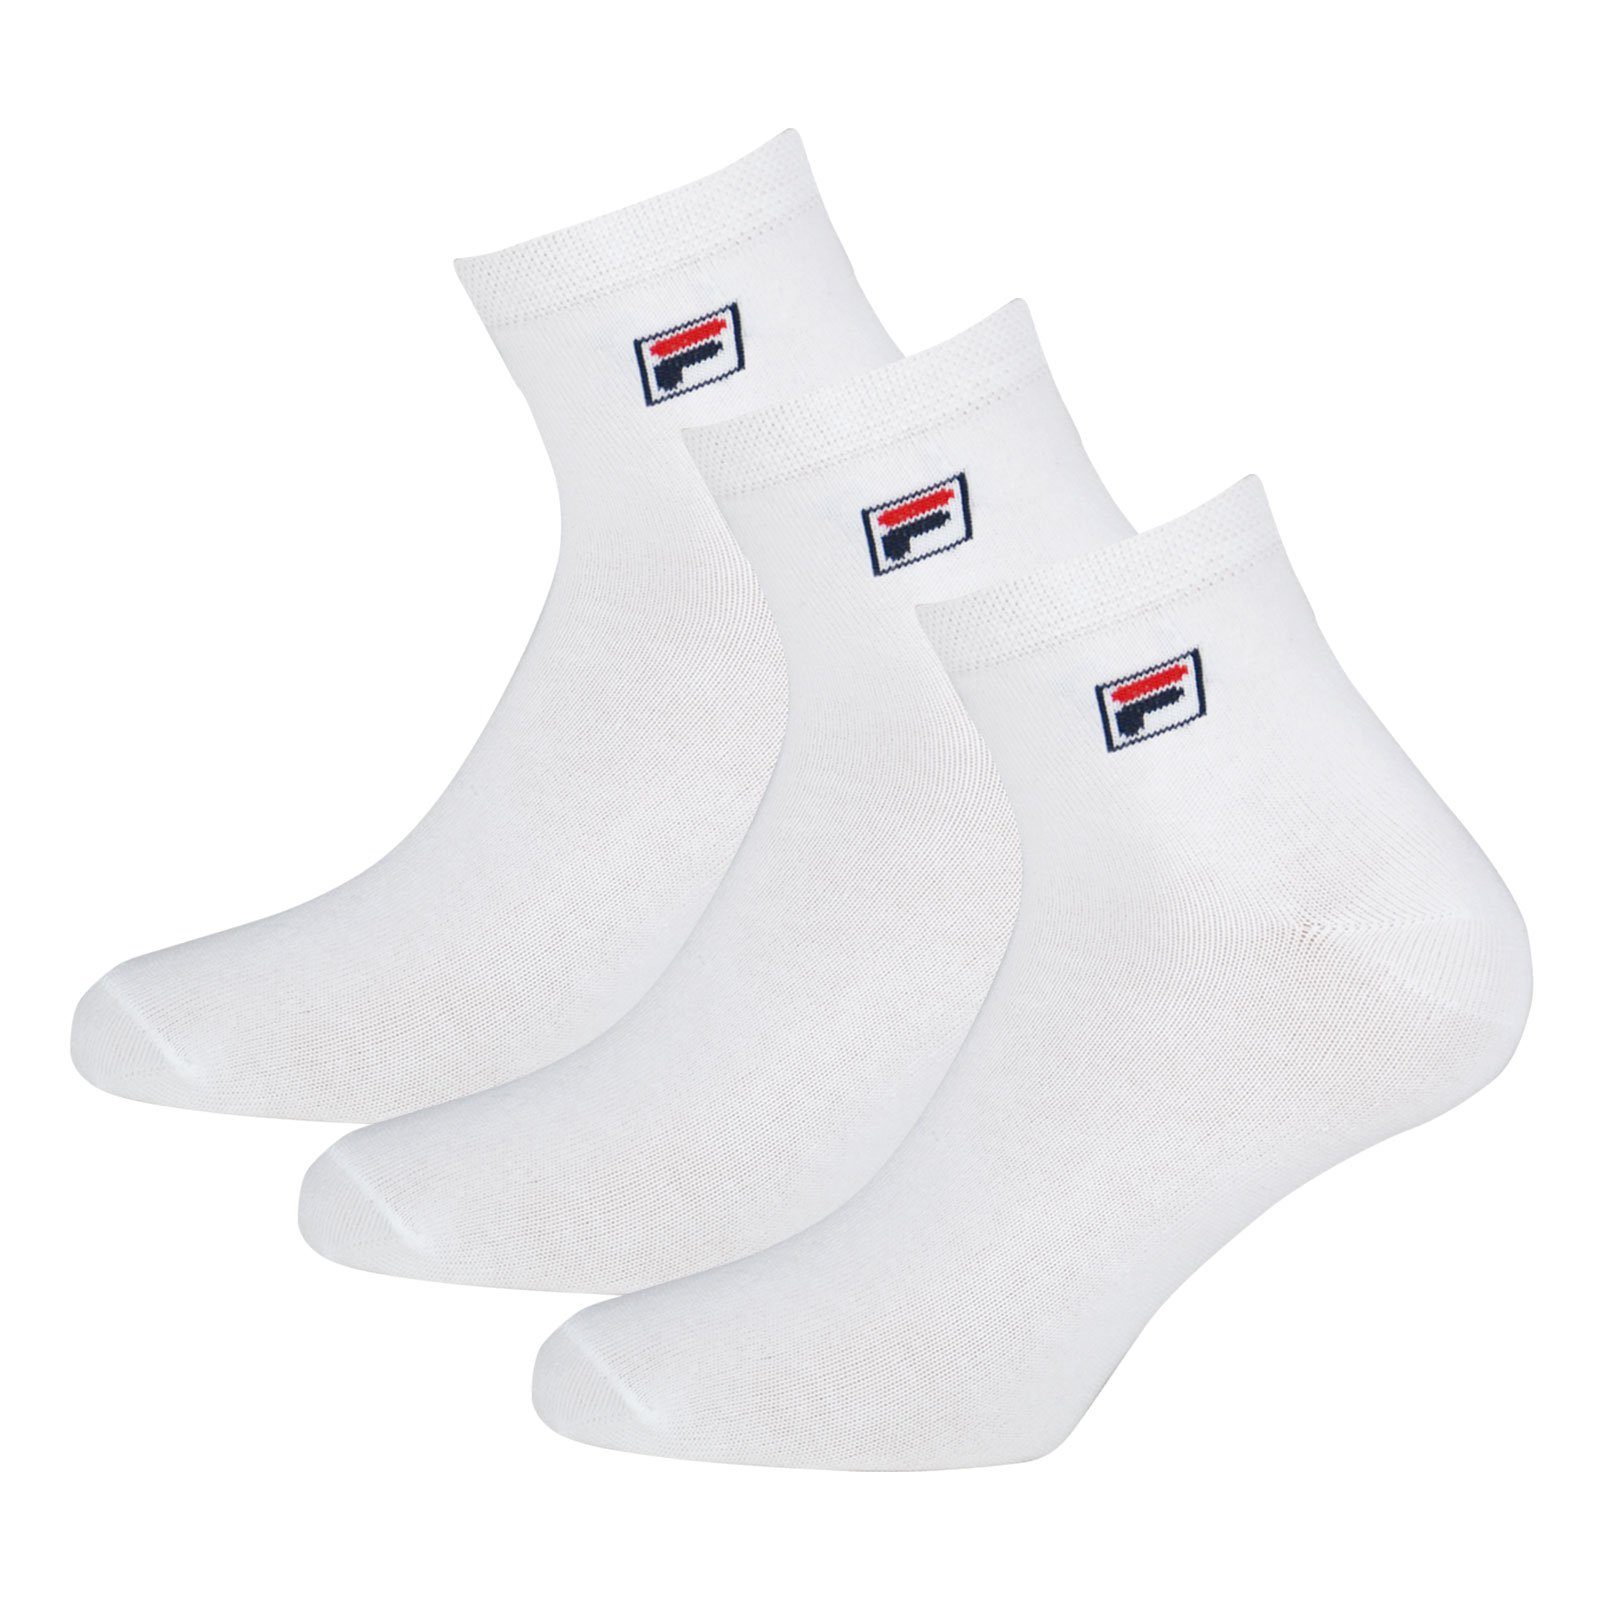 Quarter elastischem Socken Piquebund Fila 300 Sportsocken (12-Paar) mit white